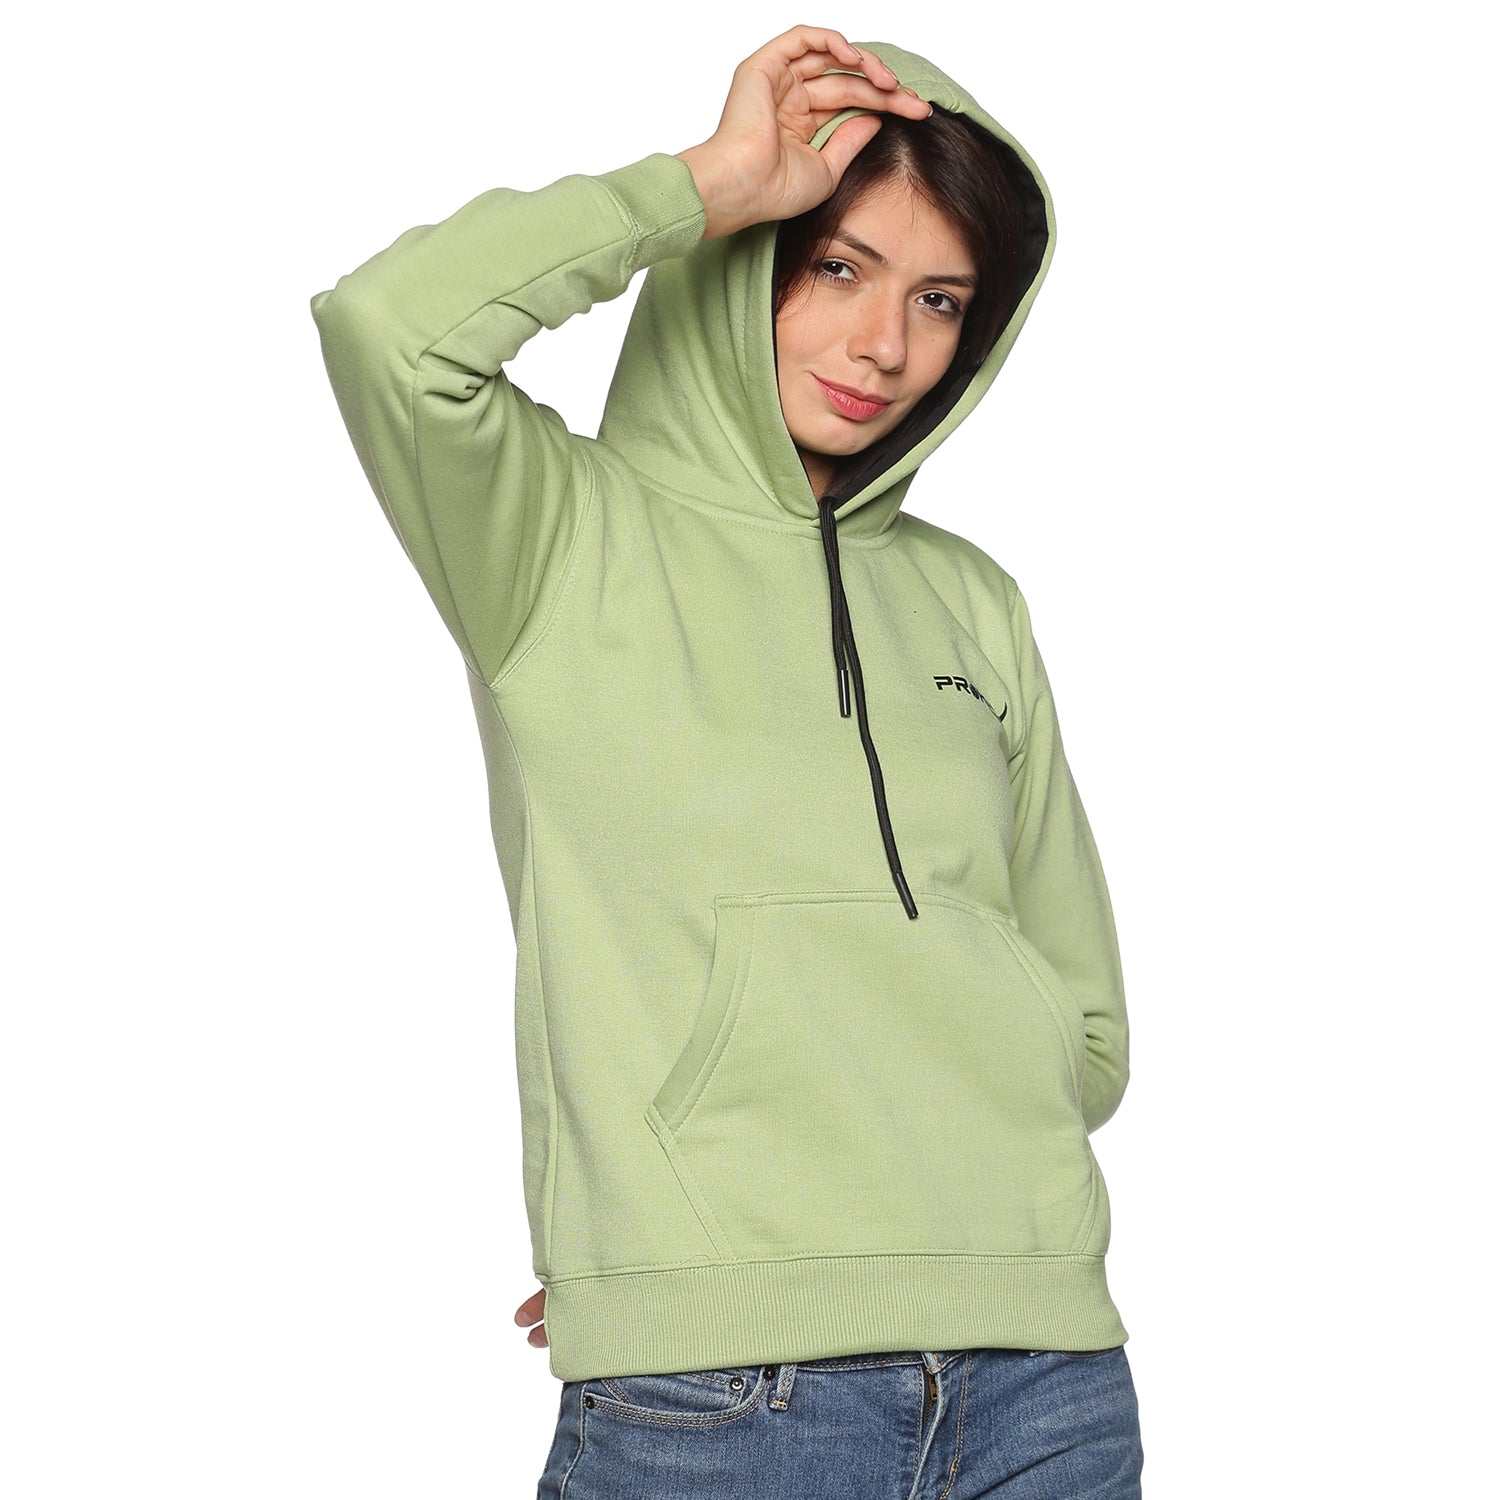 Prokick Sports Women Hooded Sweat Shirt , Green - Best Price online Prokicksports.com